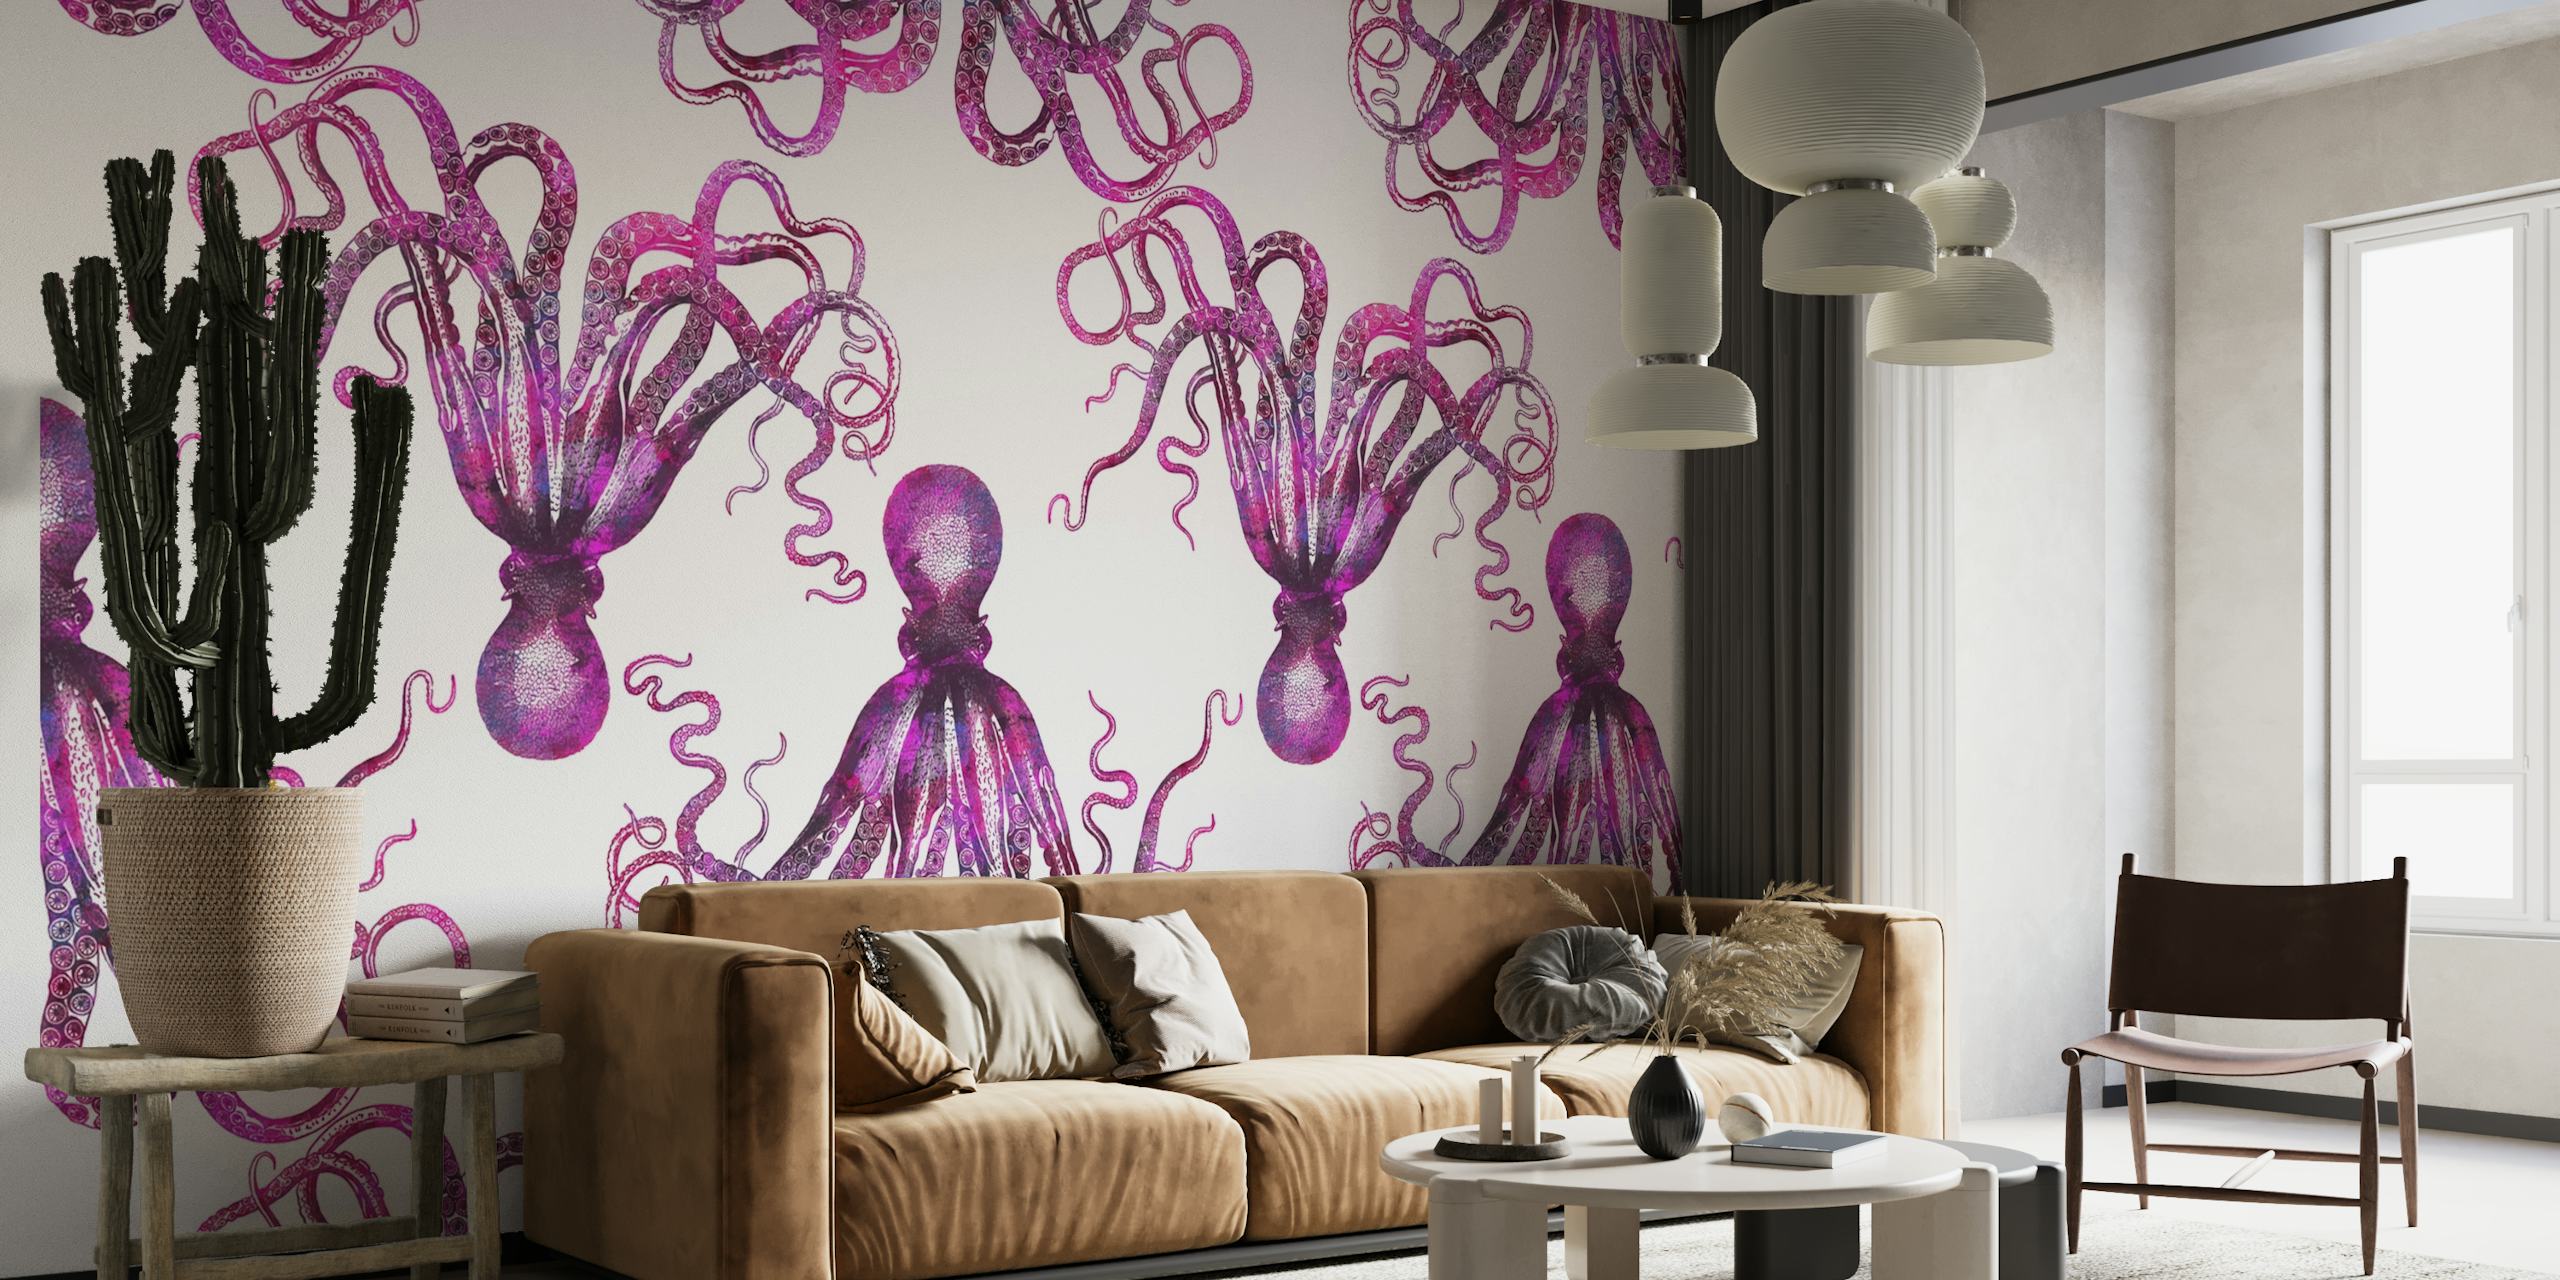 Pink Octopus behang